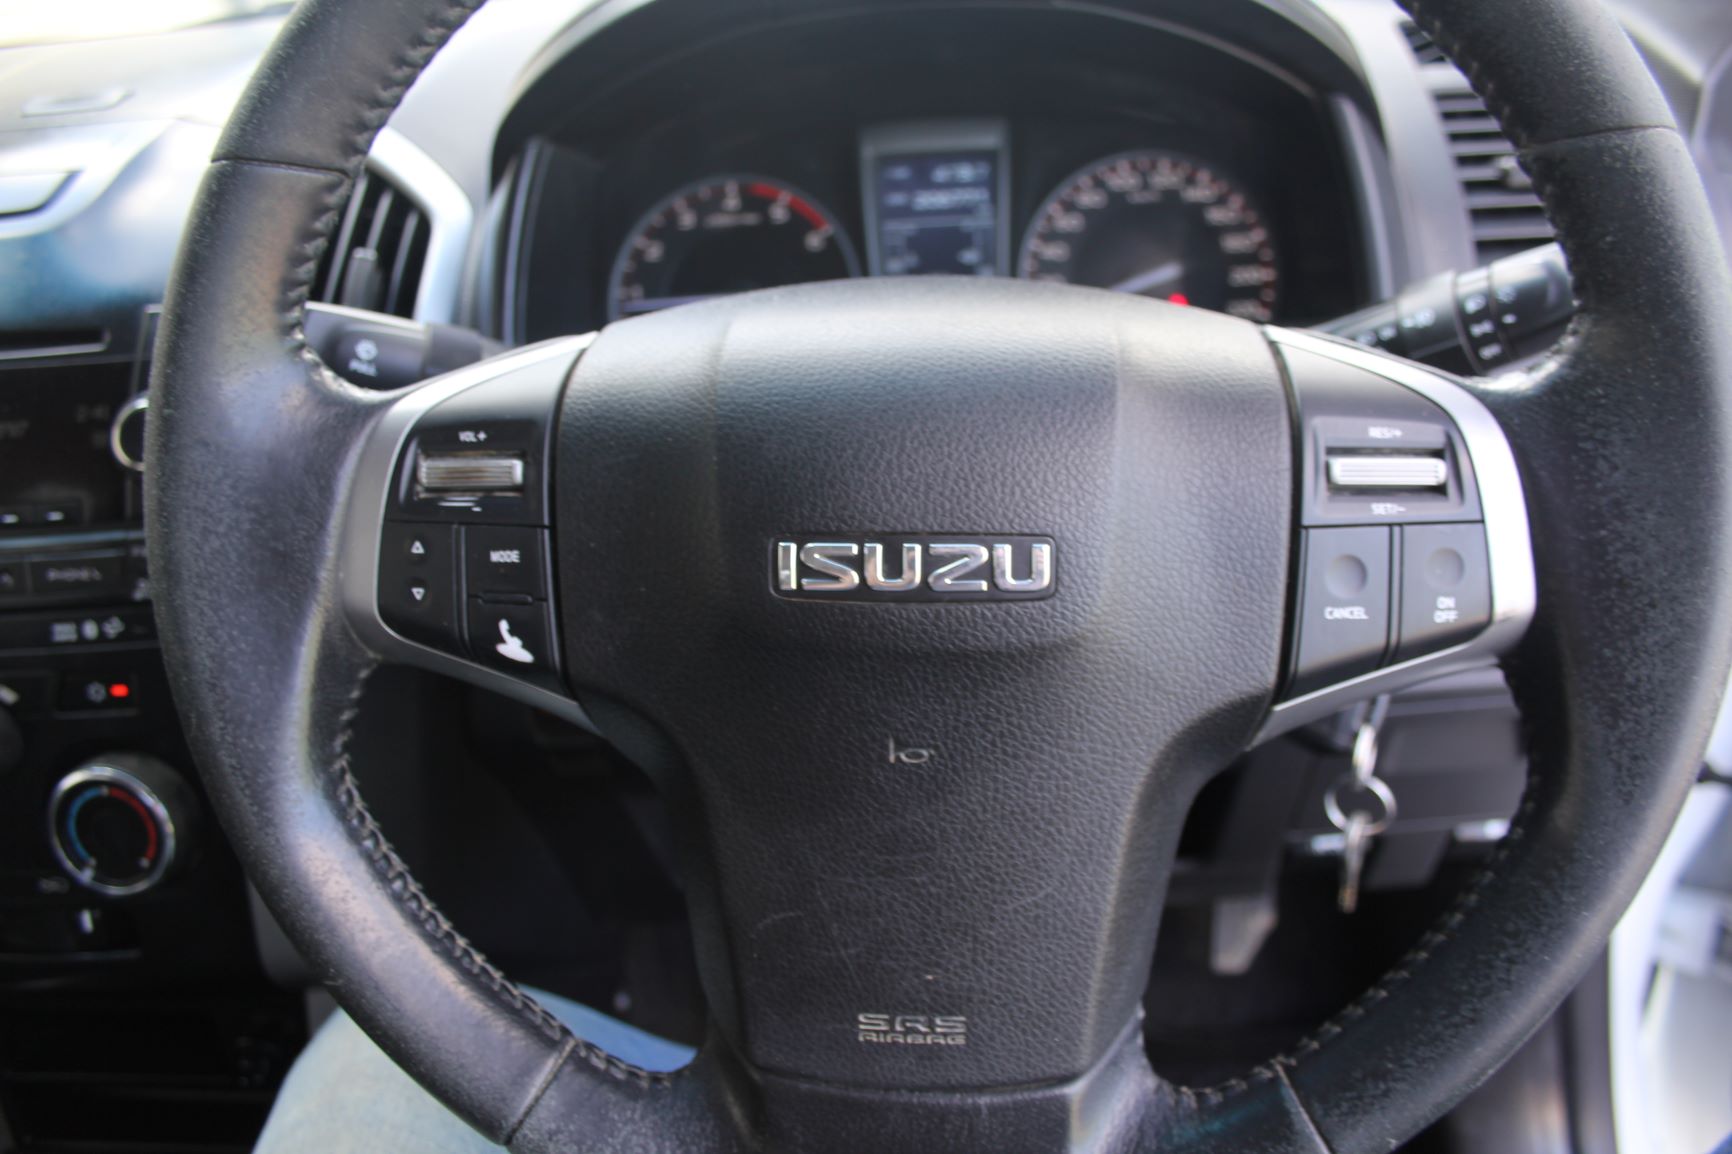 Isuzu LS 4WD 2015 for sale in Auckland